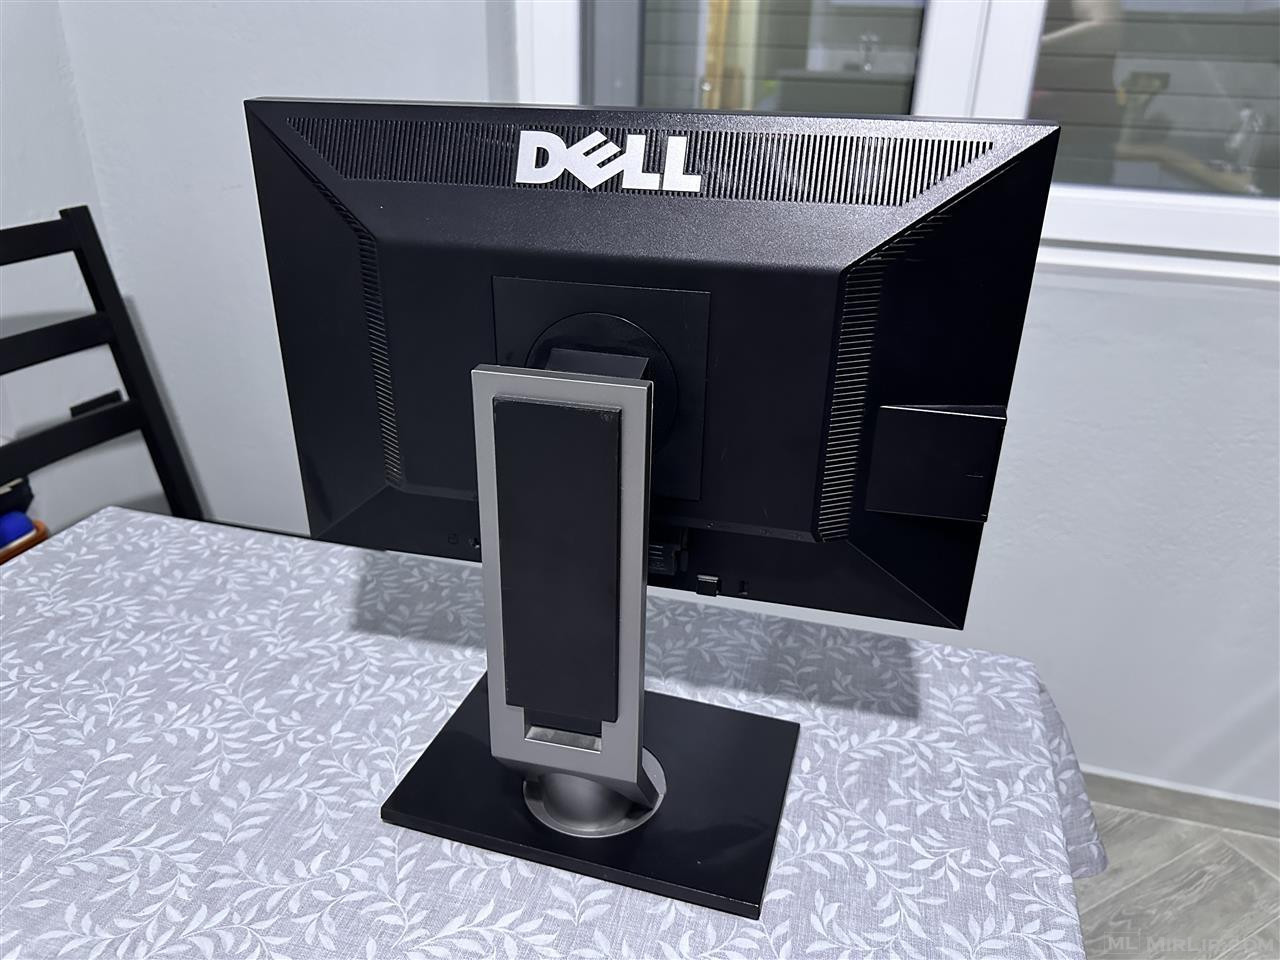 Monitor Dell Ultrasharp 19”